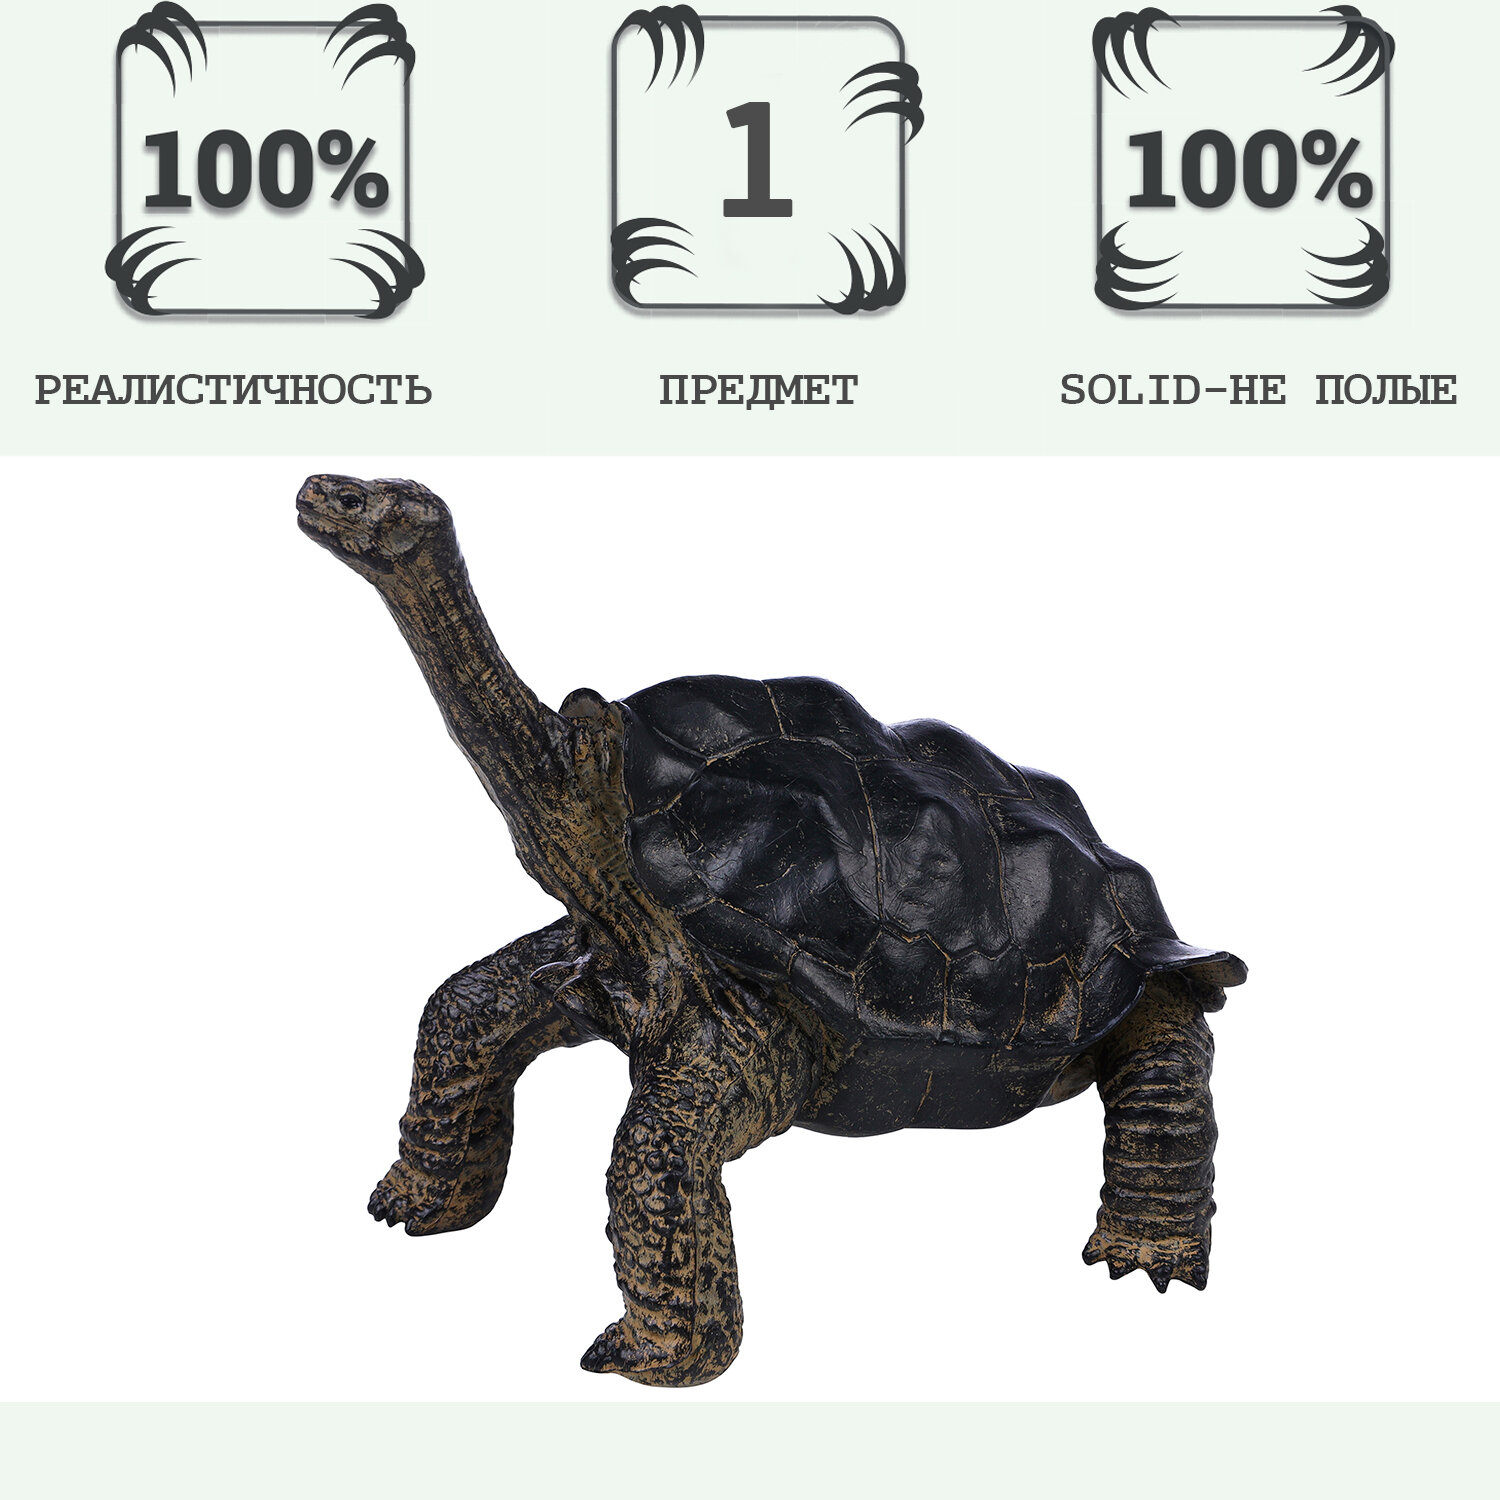 Фигурка игрушка серии "Мир диких животных": рептилия Звездчатая черепаха